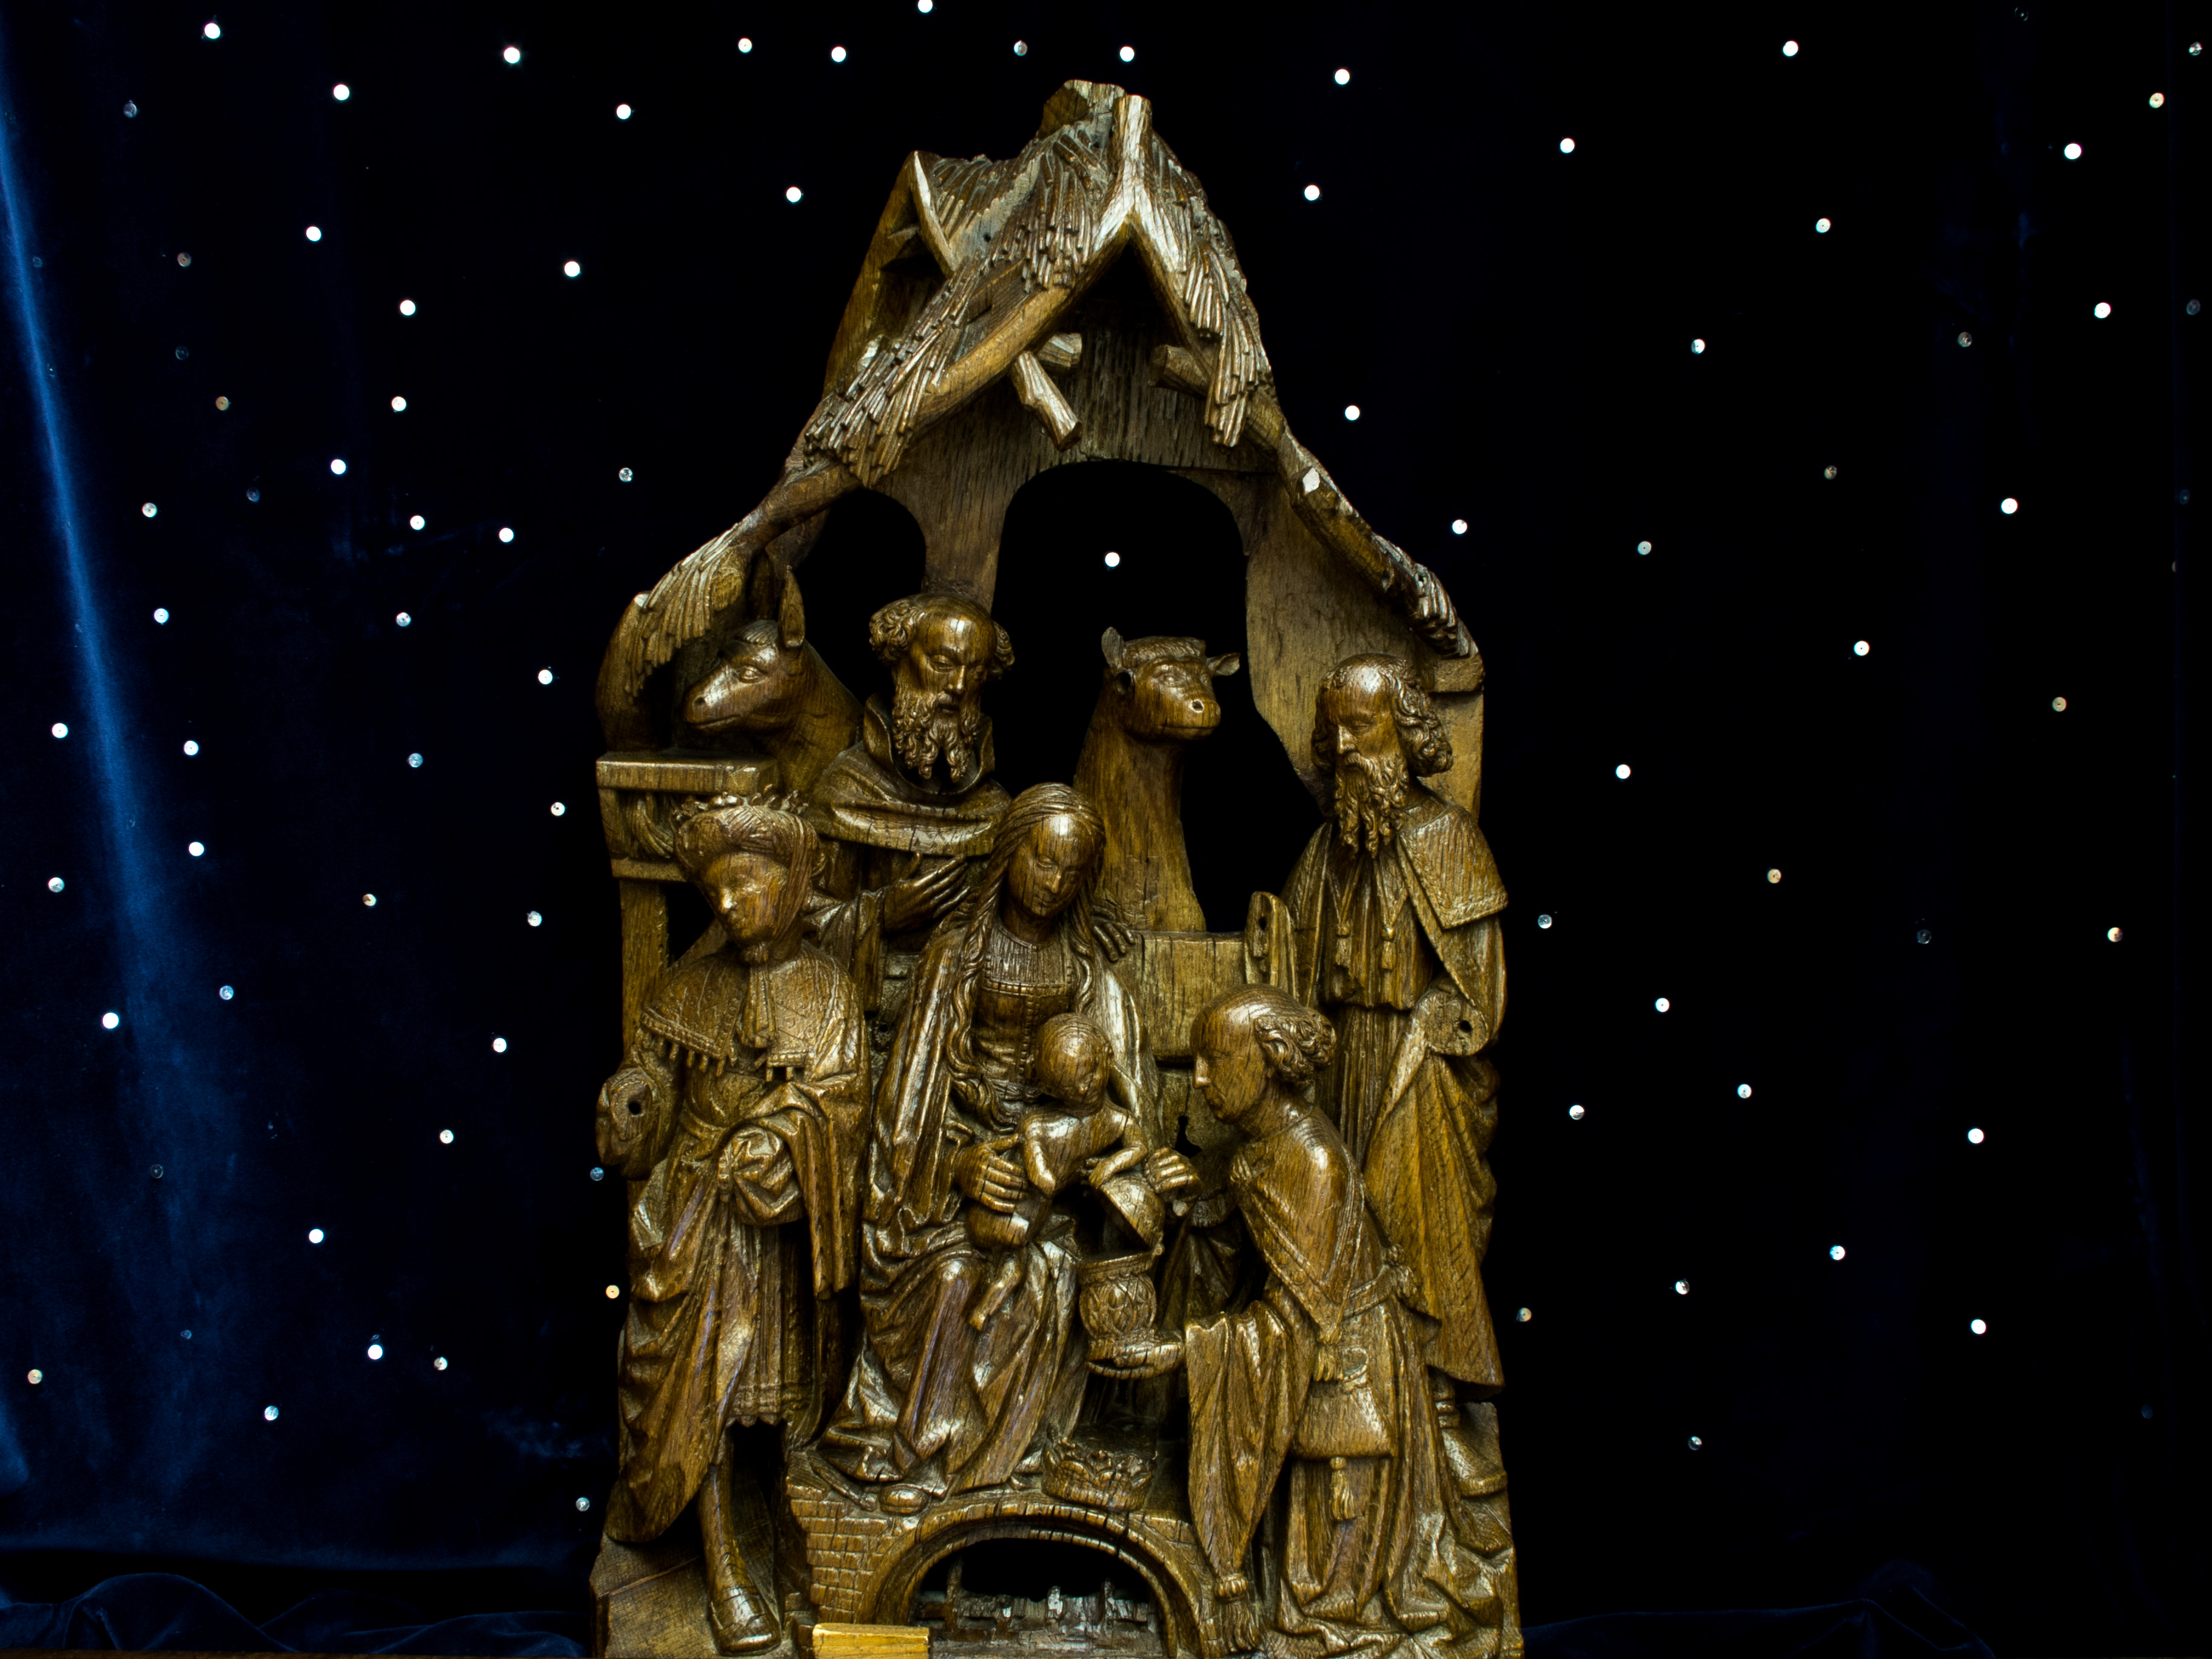 Este fragmento de retablo del siglo XV representa la "Adoración de los Reyes"; se puede encontrar en la Casa Museu Guerra Junqueiro de Oporto, muy cerca de la Catedral.